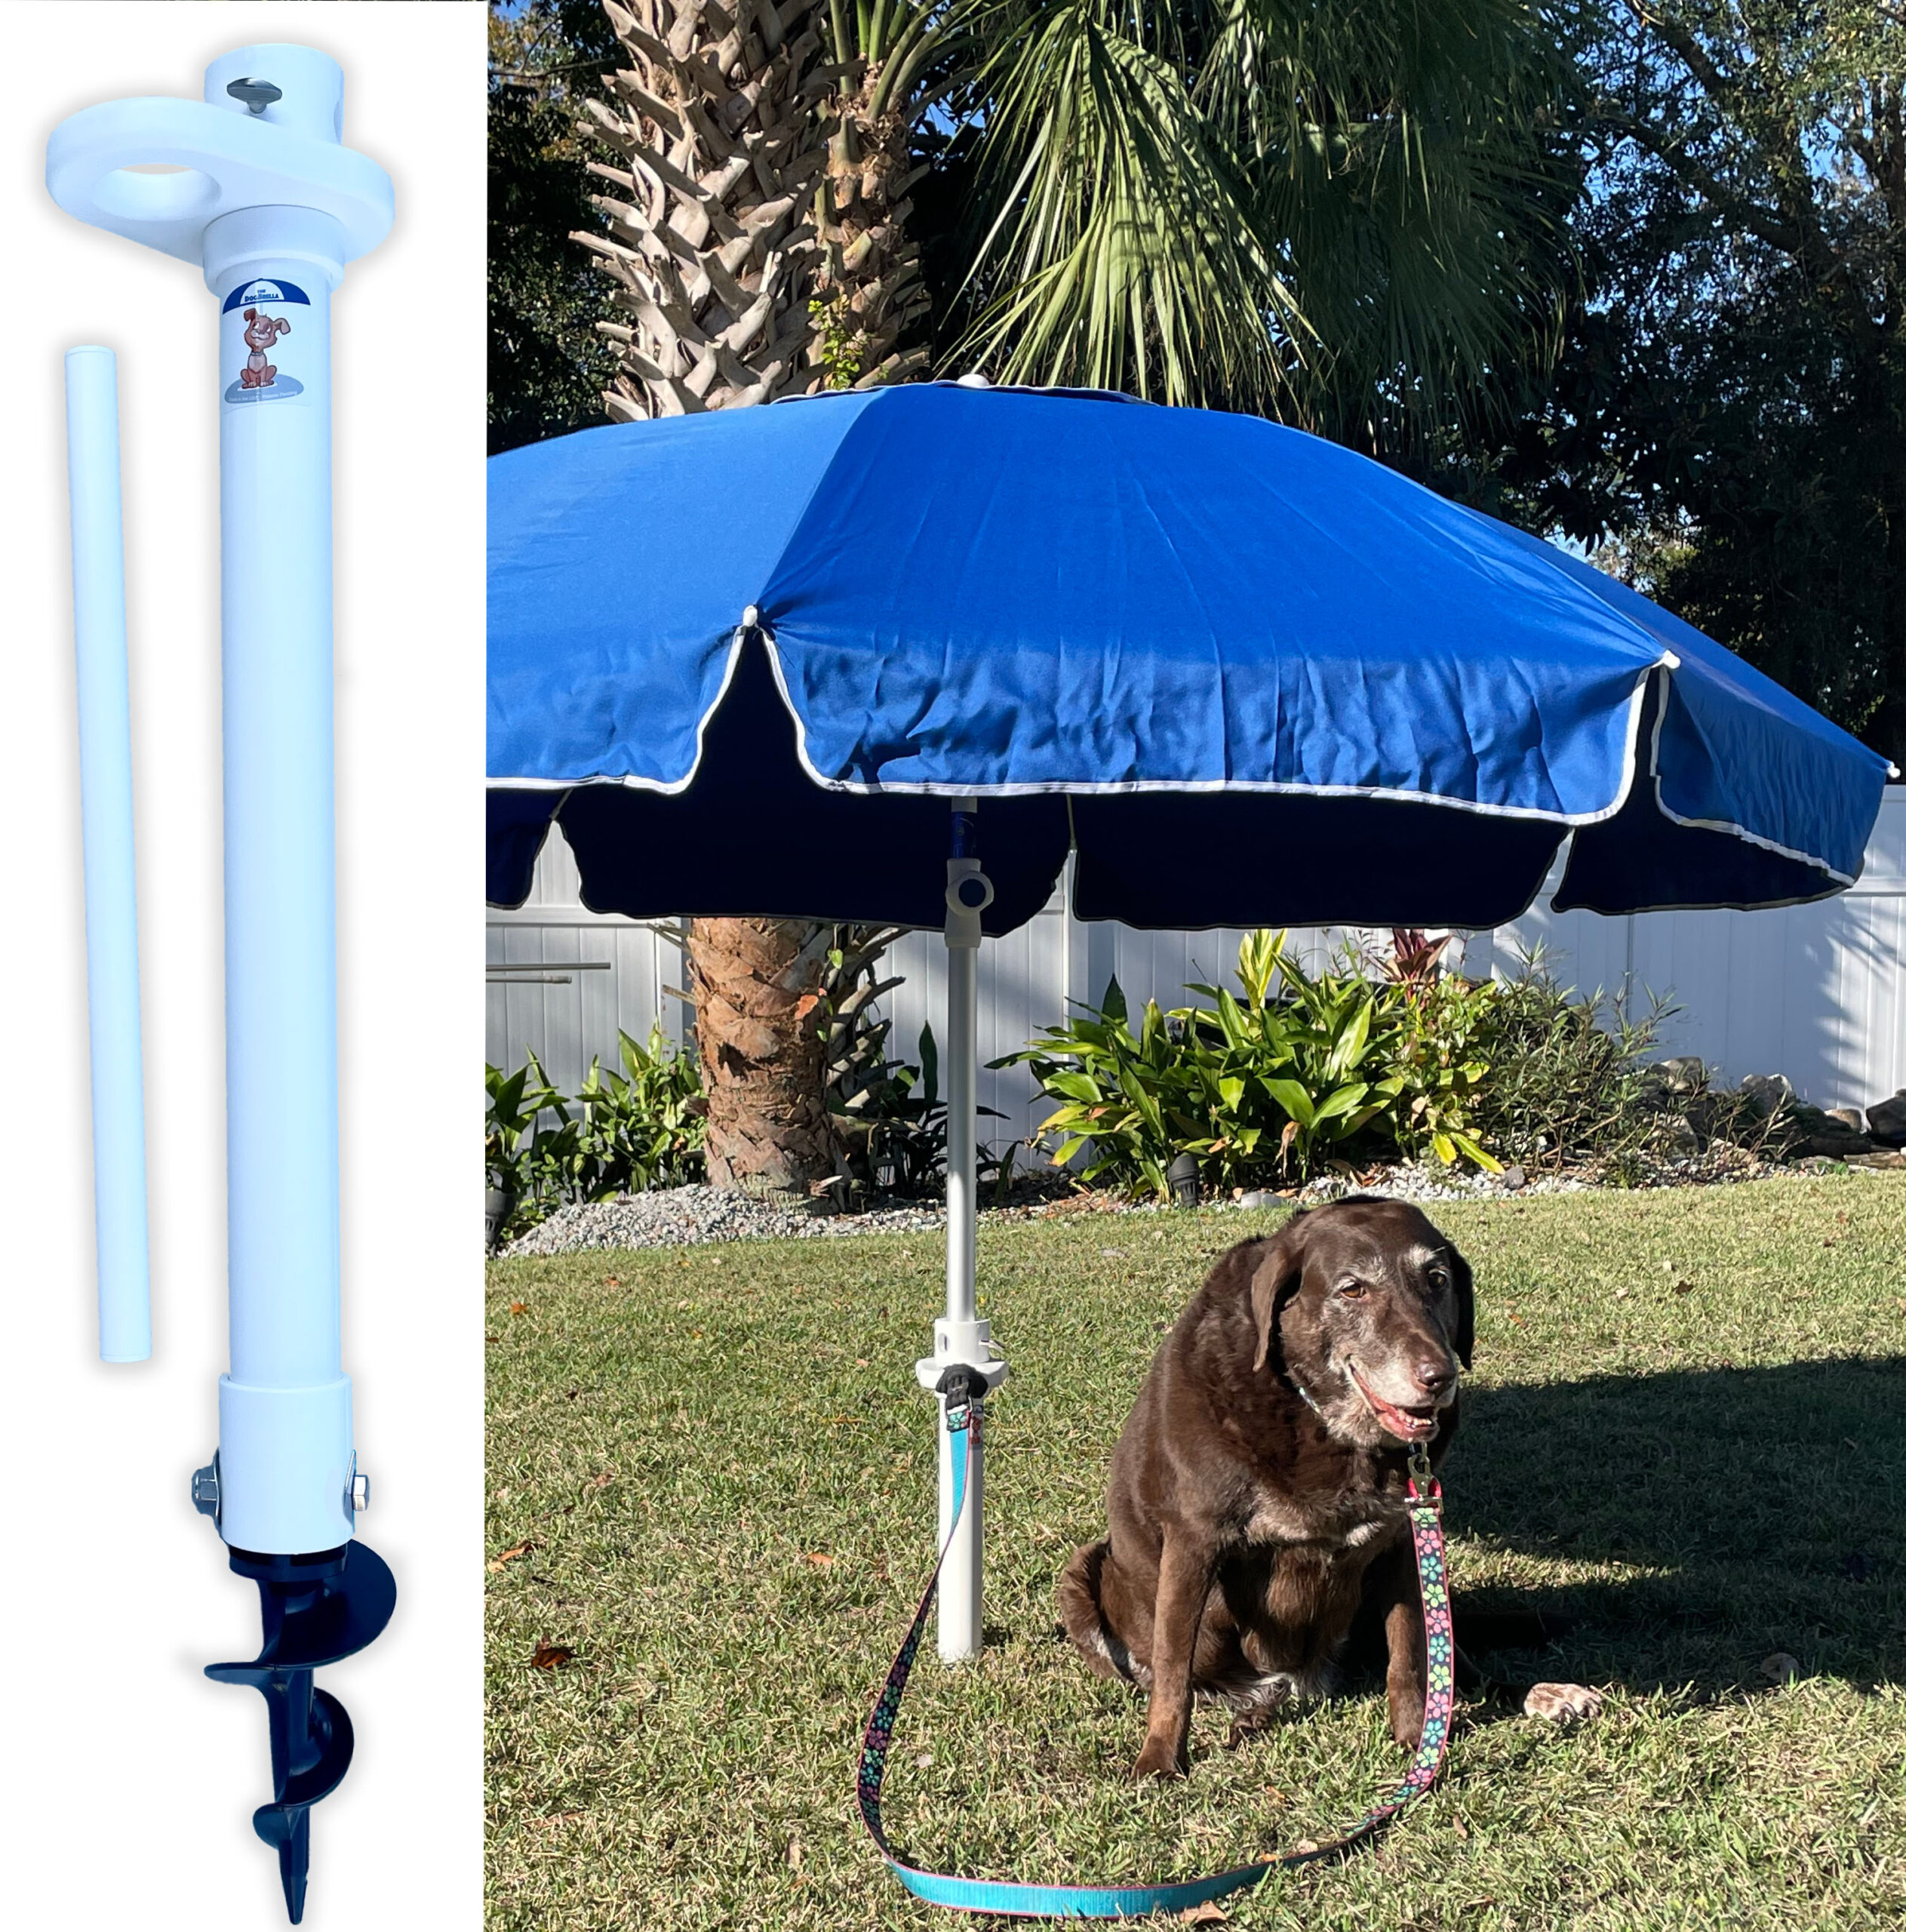 DogBrella Pet Leash umbrella tie down system